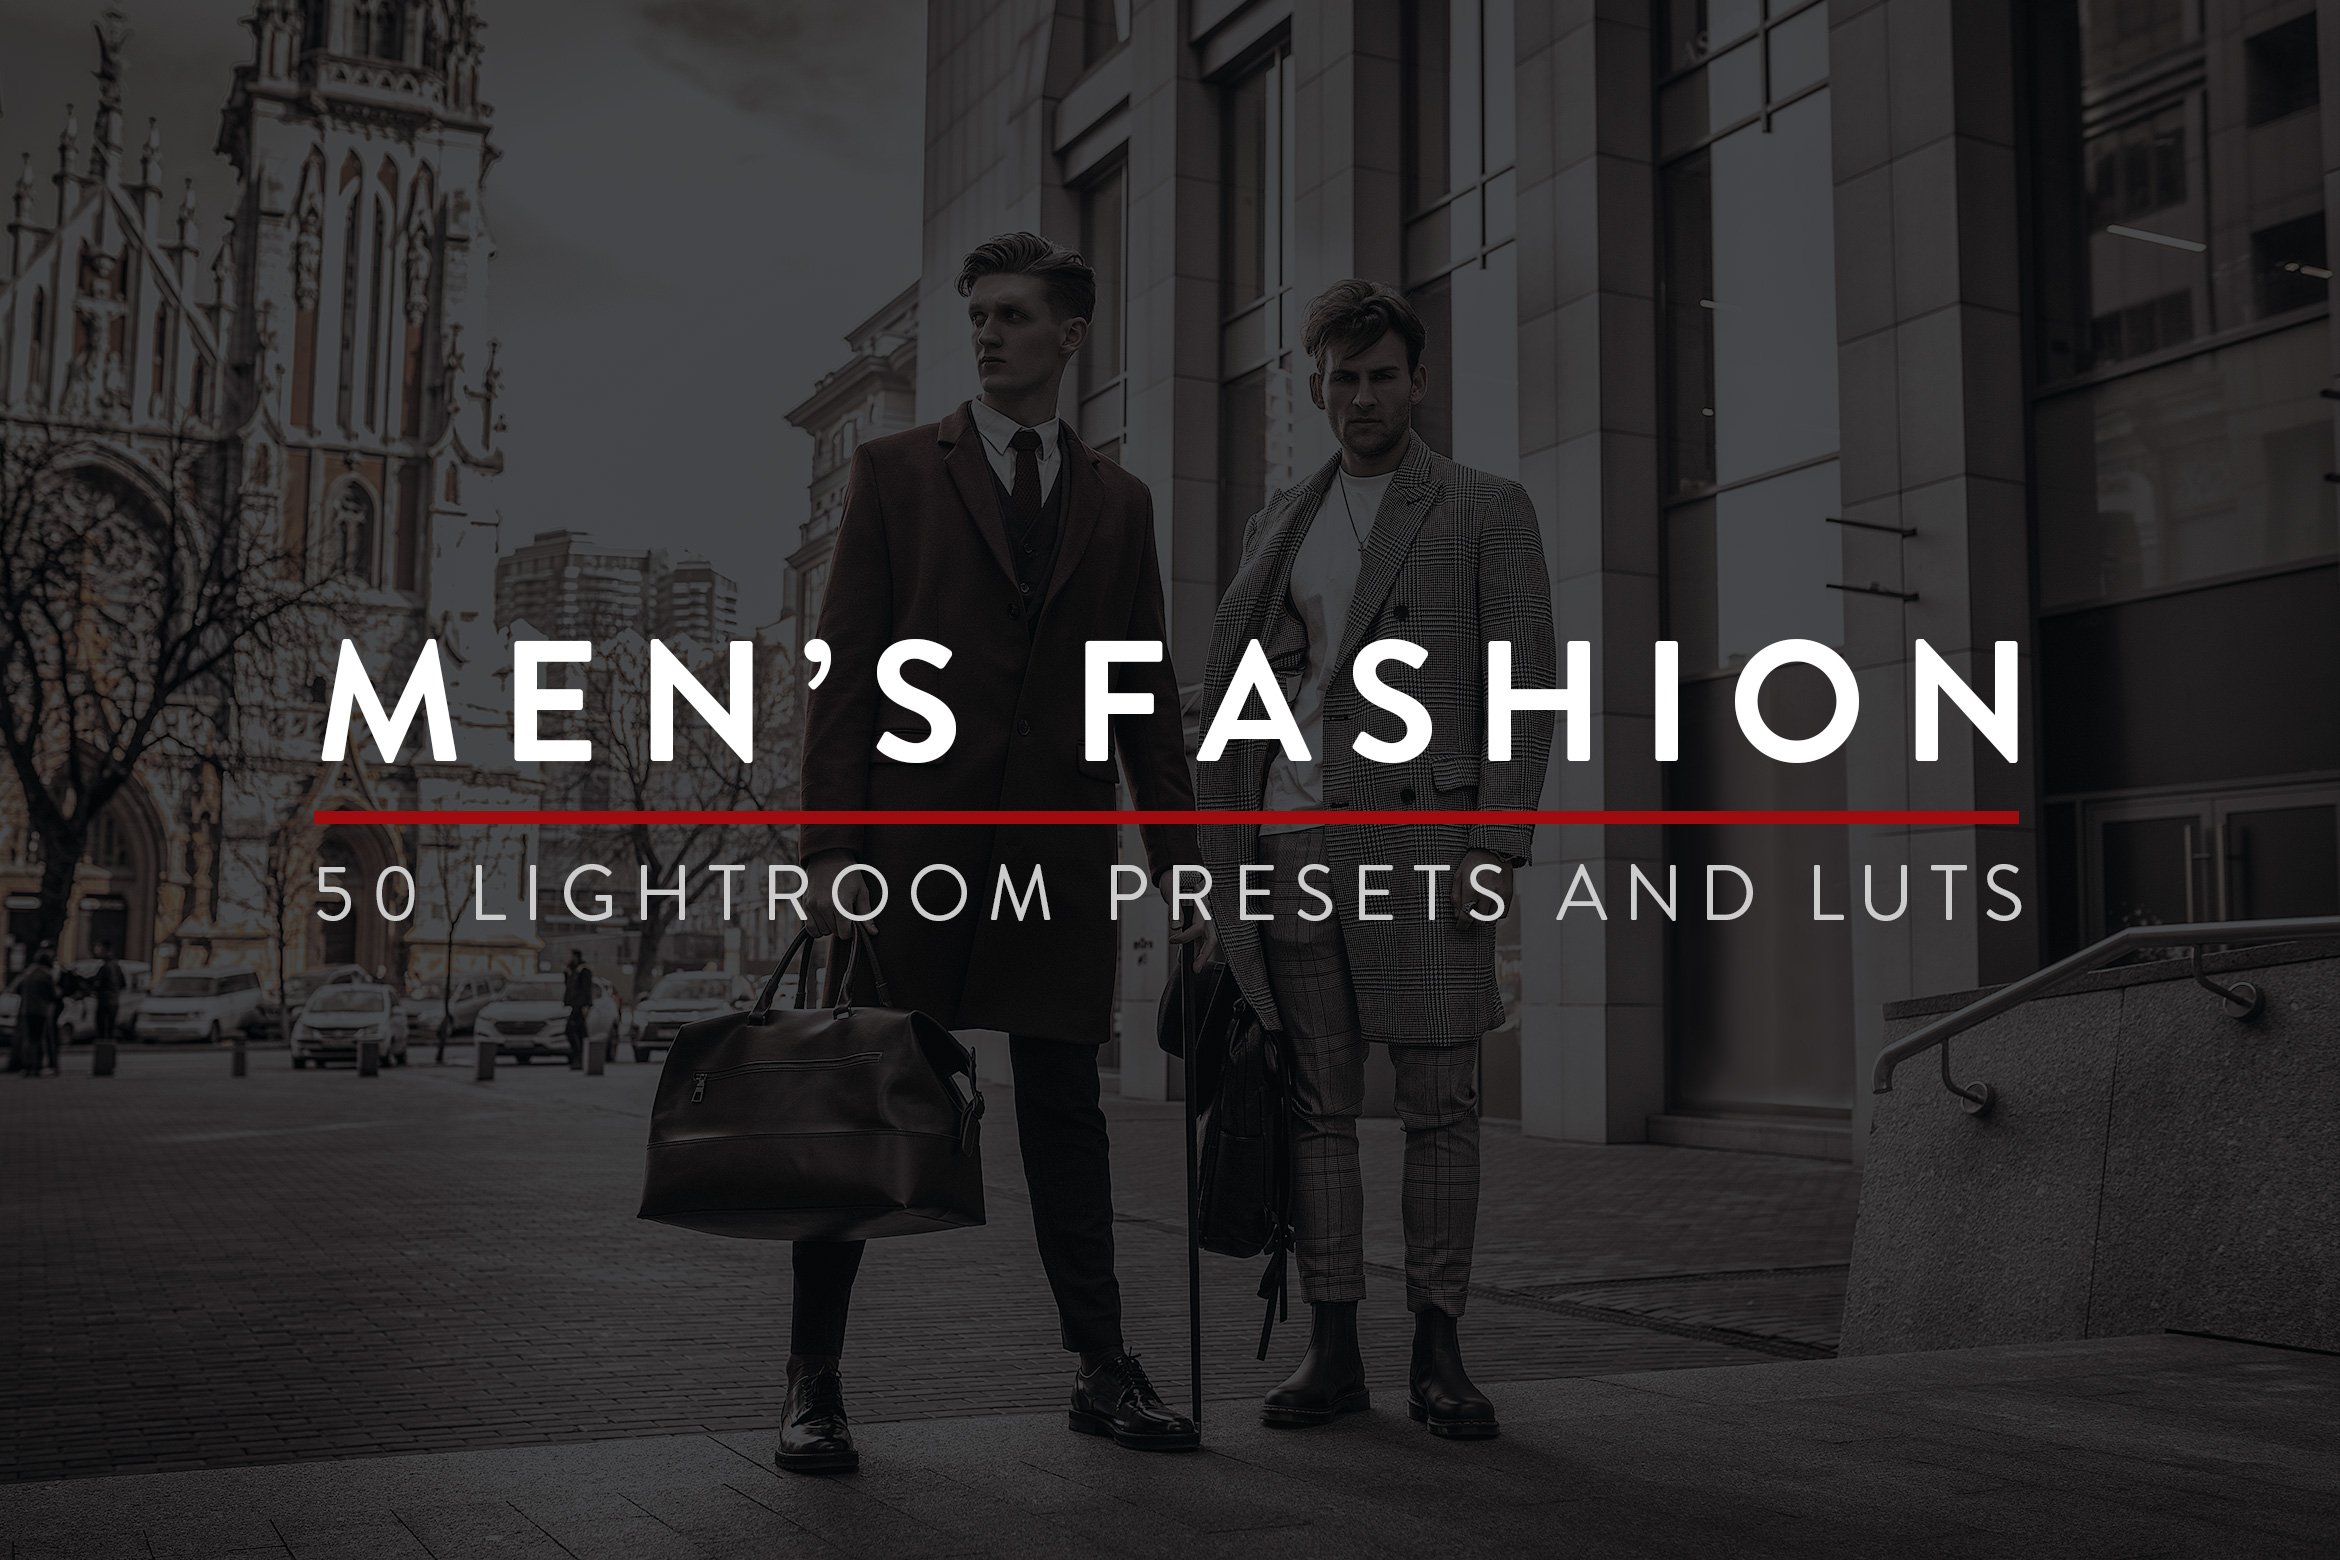 50 Men's Fashion Lightroom Presetscover image.